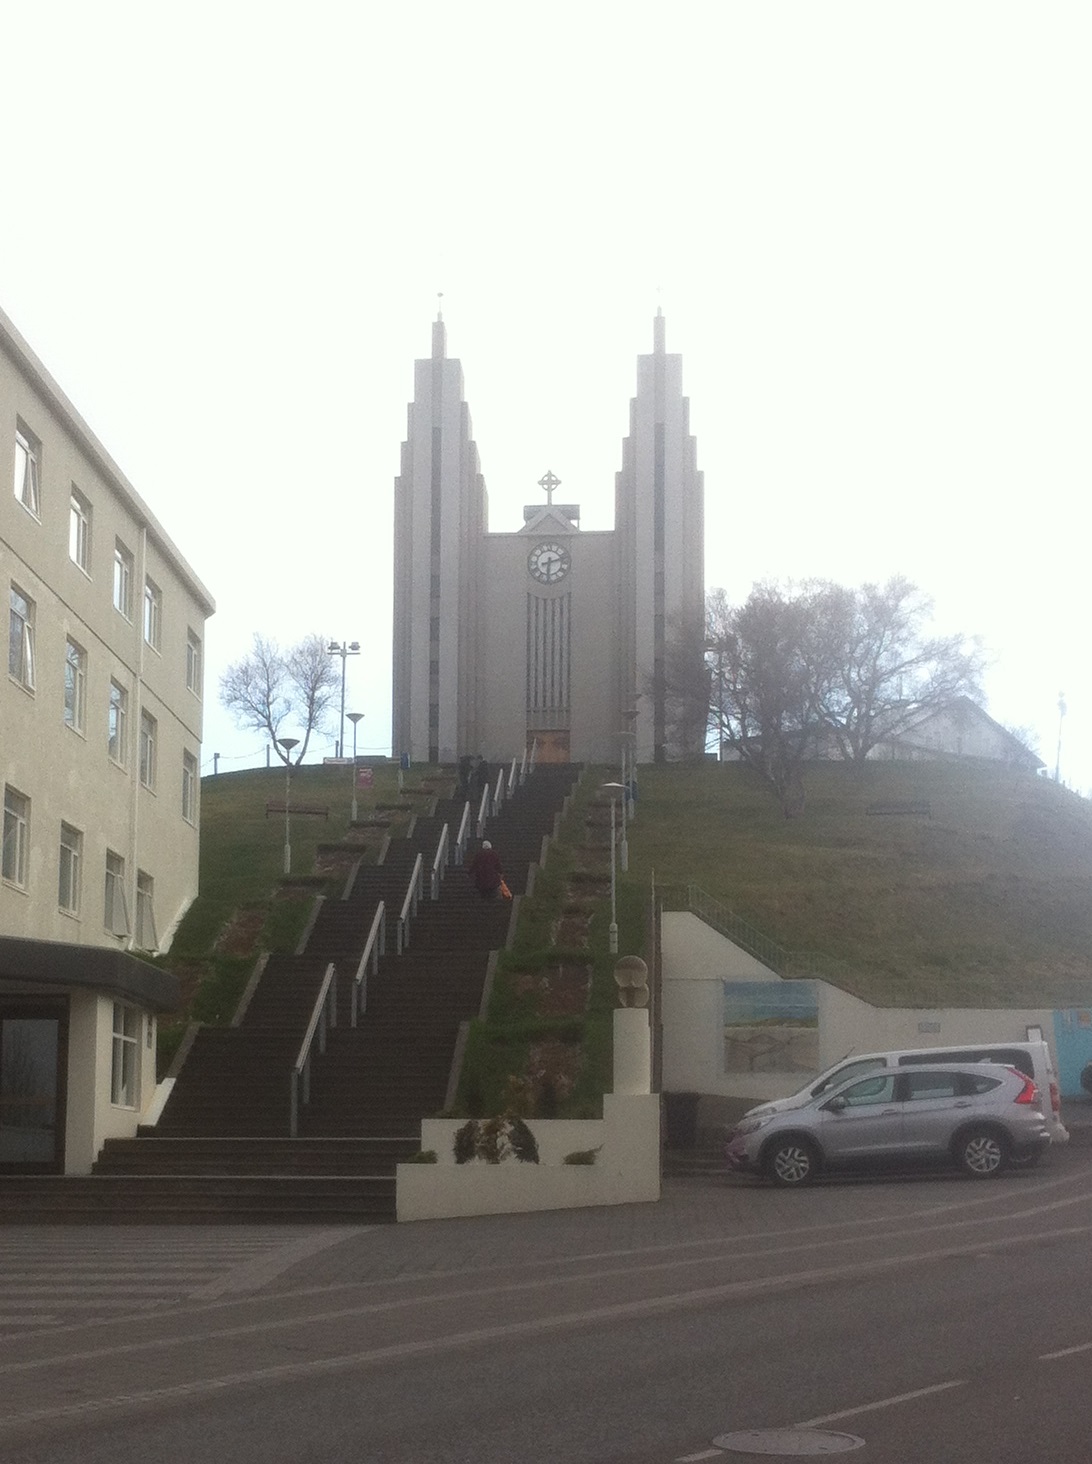 Akureyrarkirkja Lutheran Church, Iceland